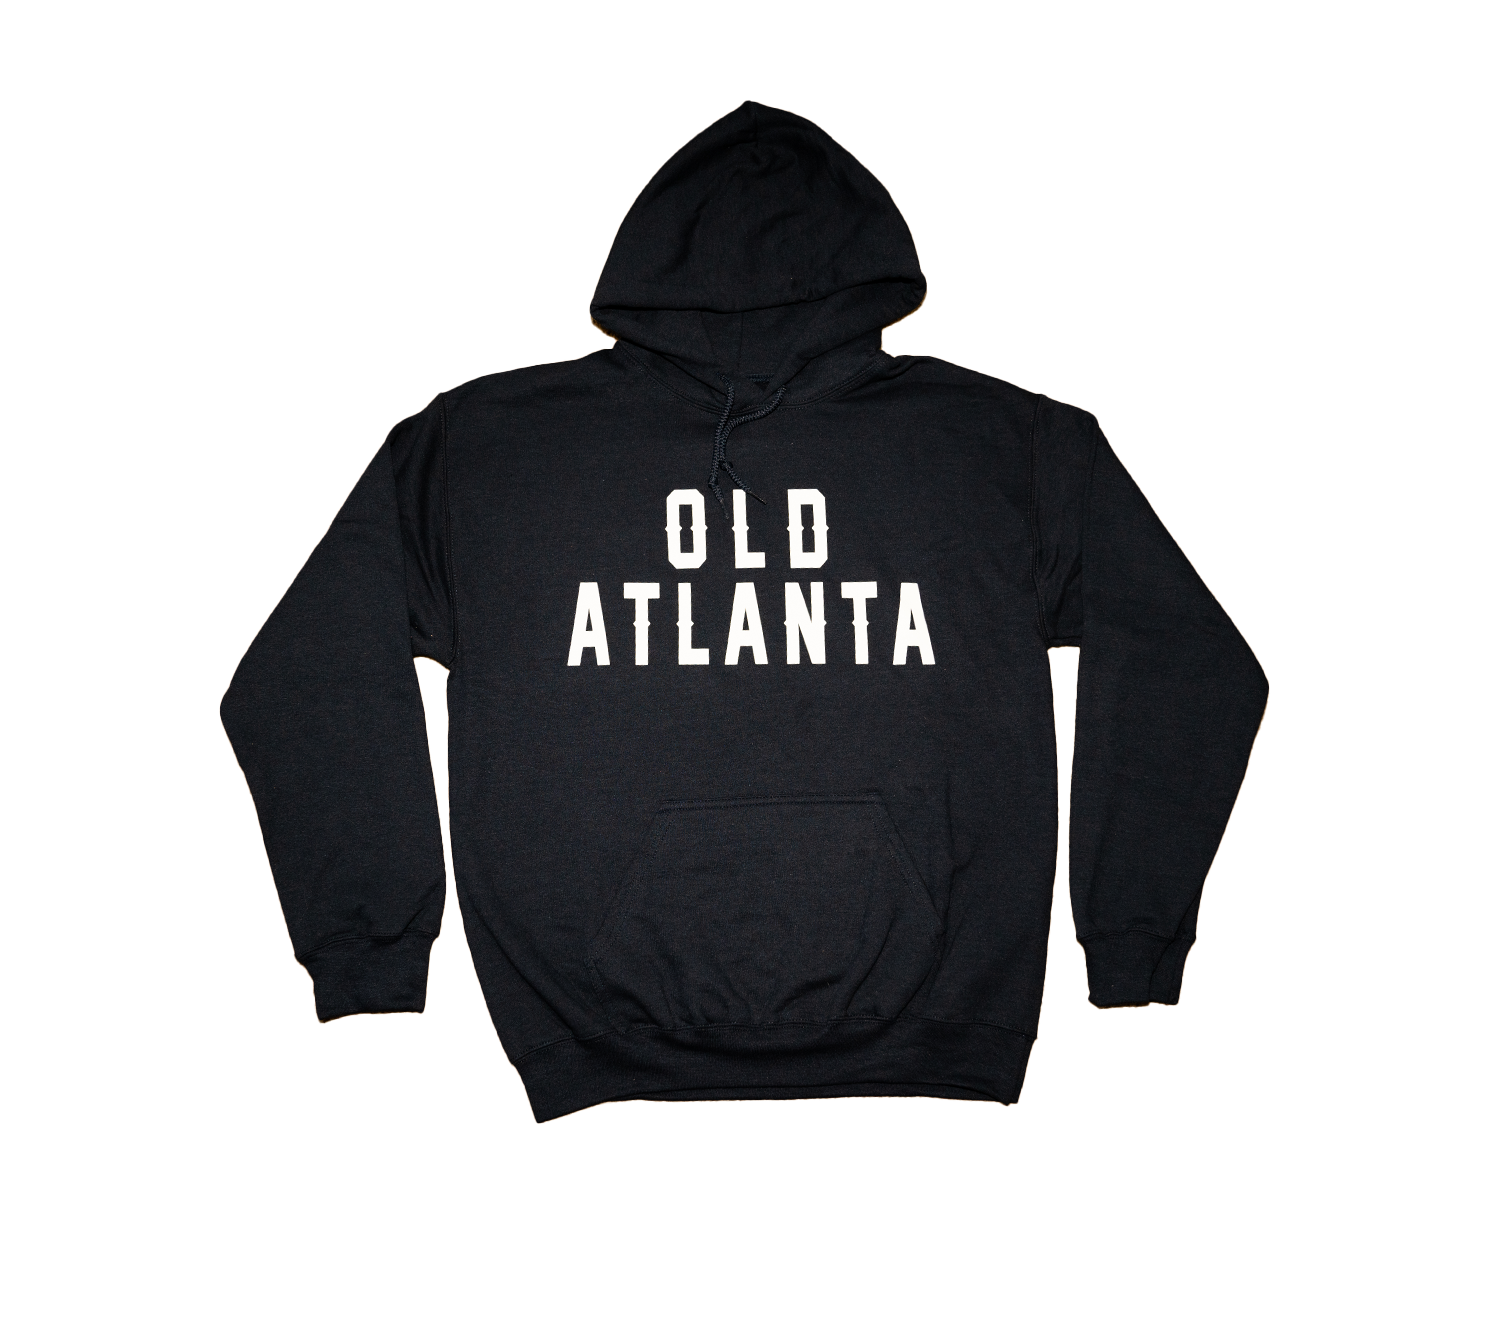 The ‘Old Atlanta’ Hoodie